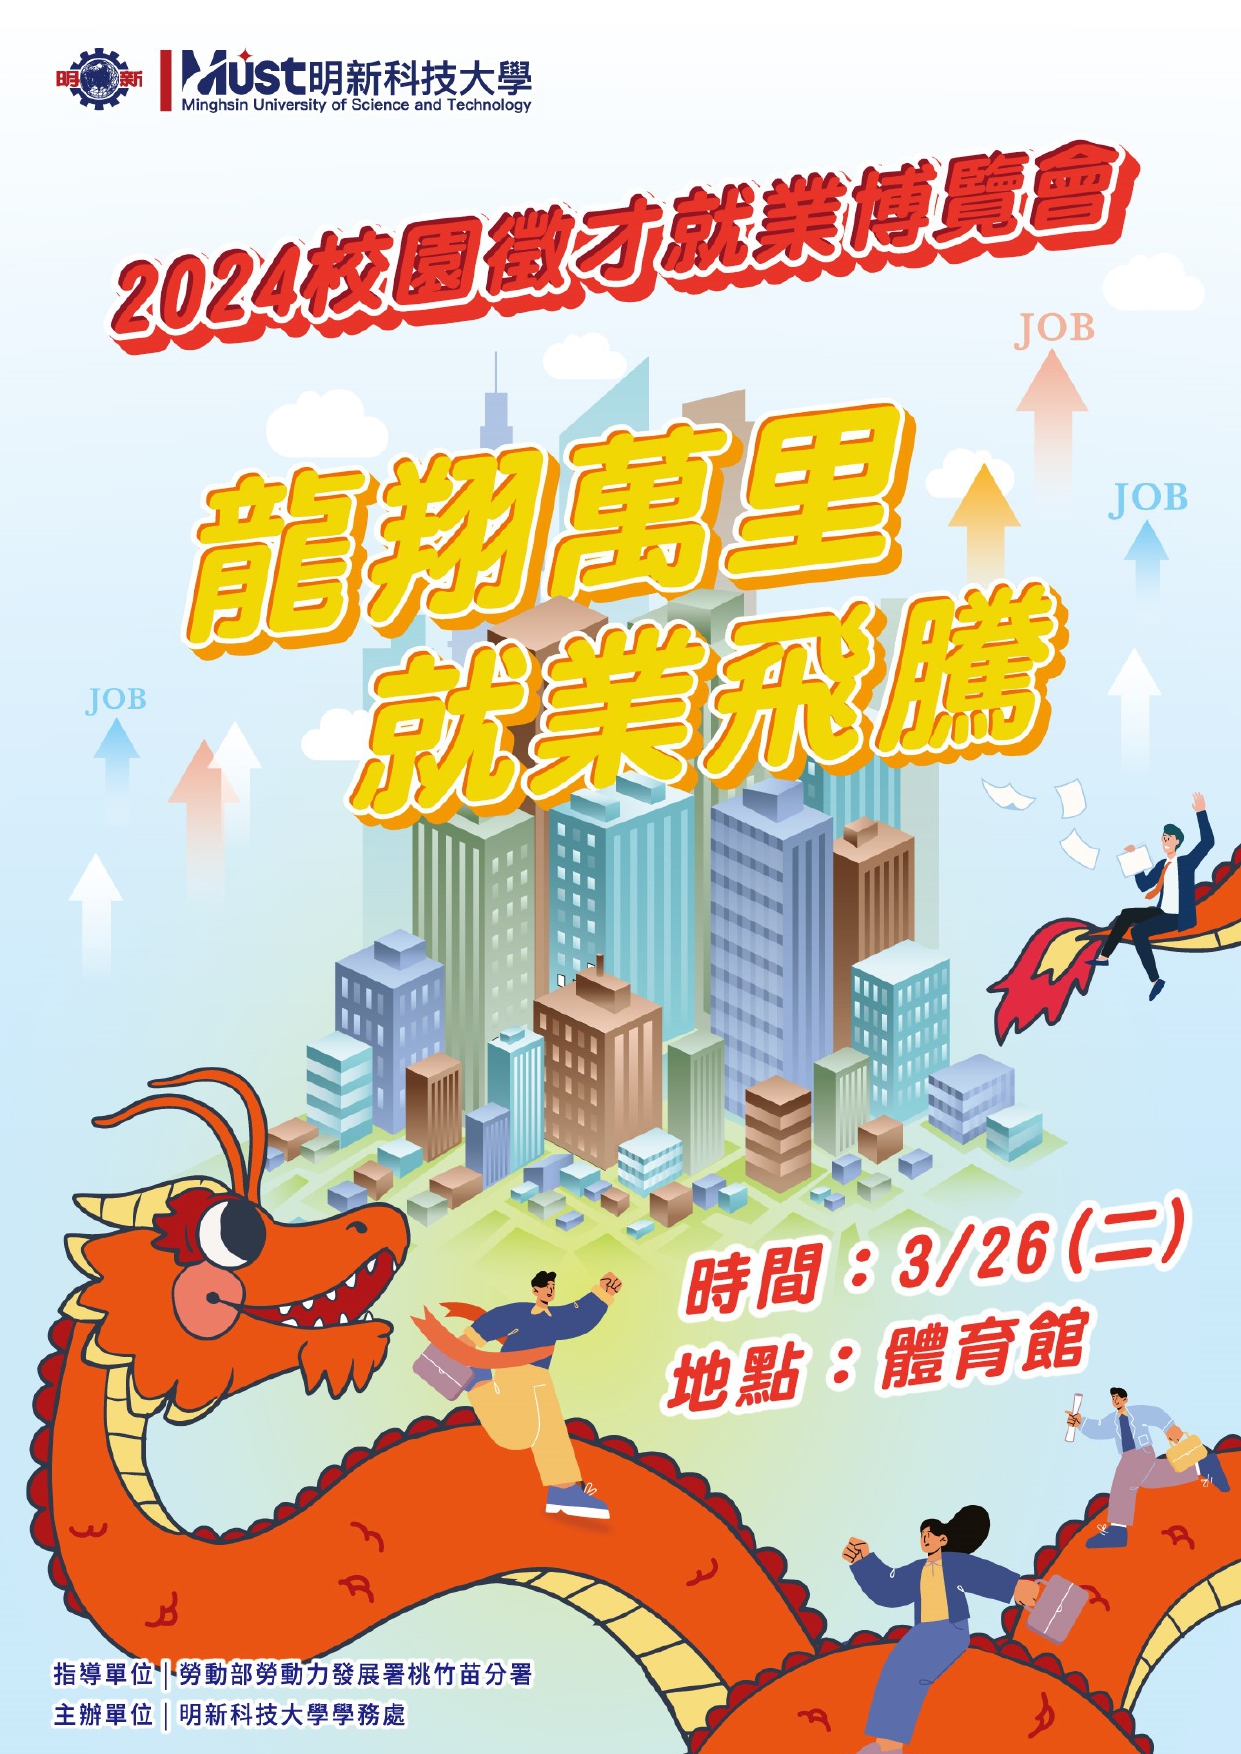 113年3月26日明新科技大學於2024舉辦「龍翔萬里，就業飛騰」校園徵才就業博覽會。